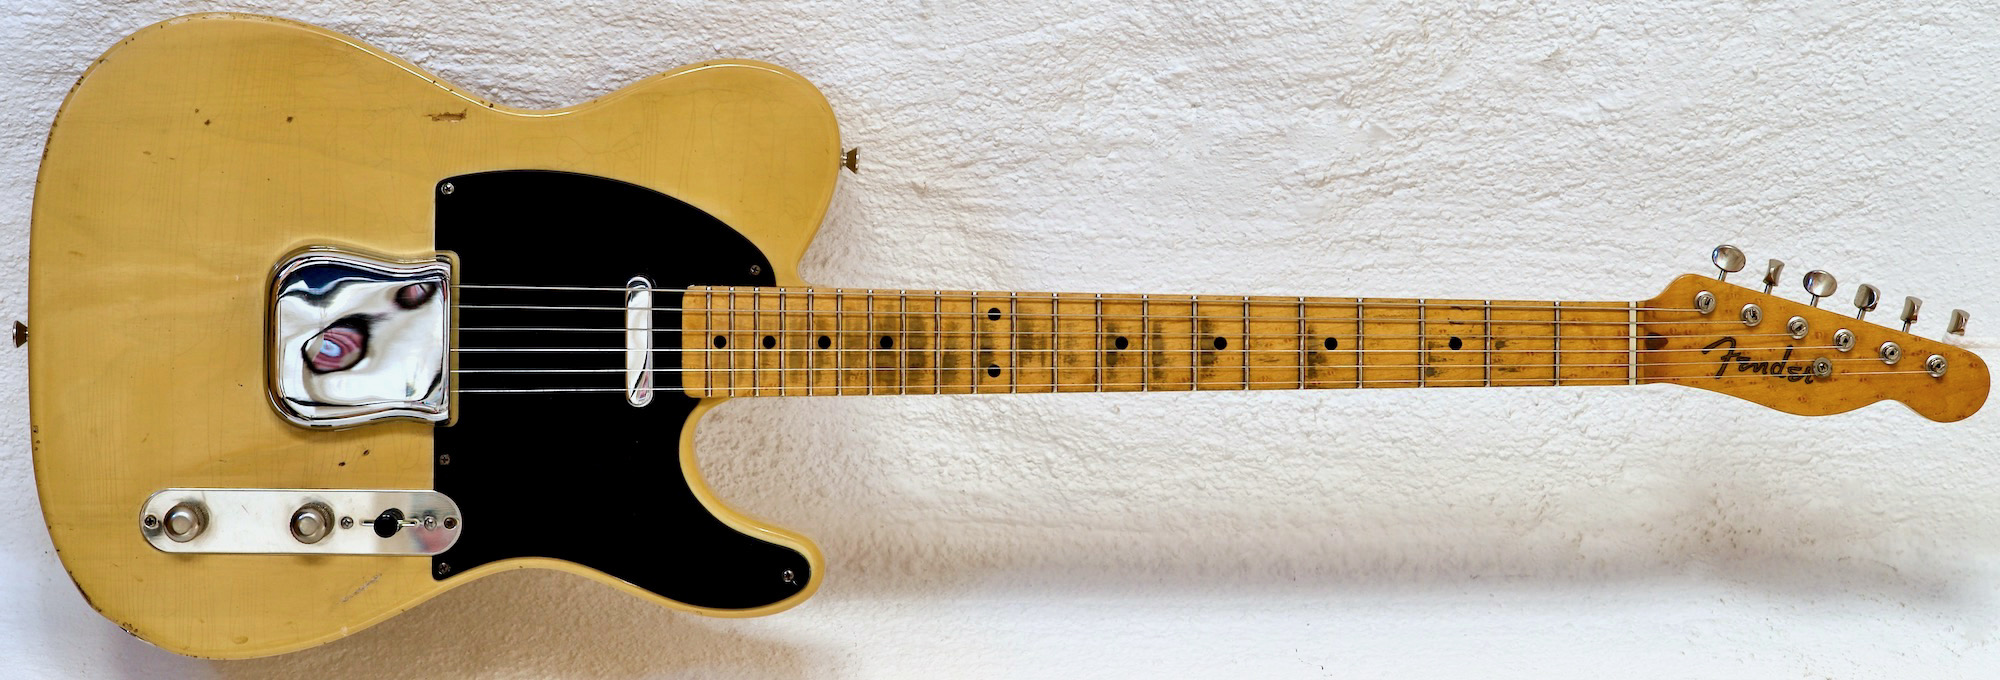 Black Guard 50’s replica parts guitar